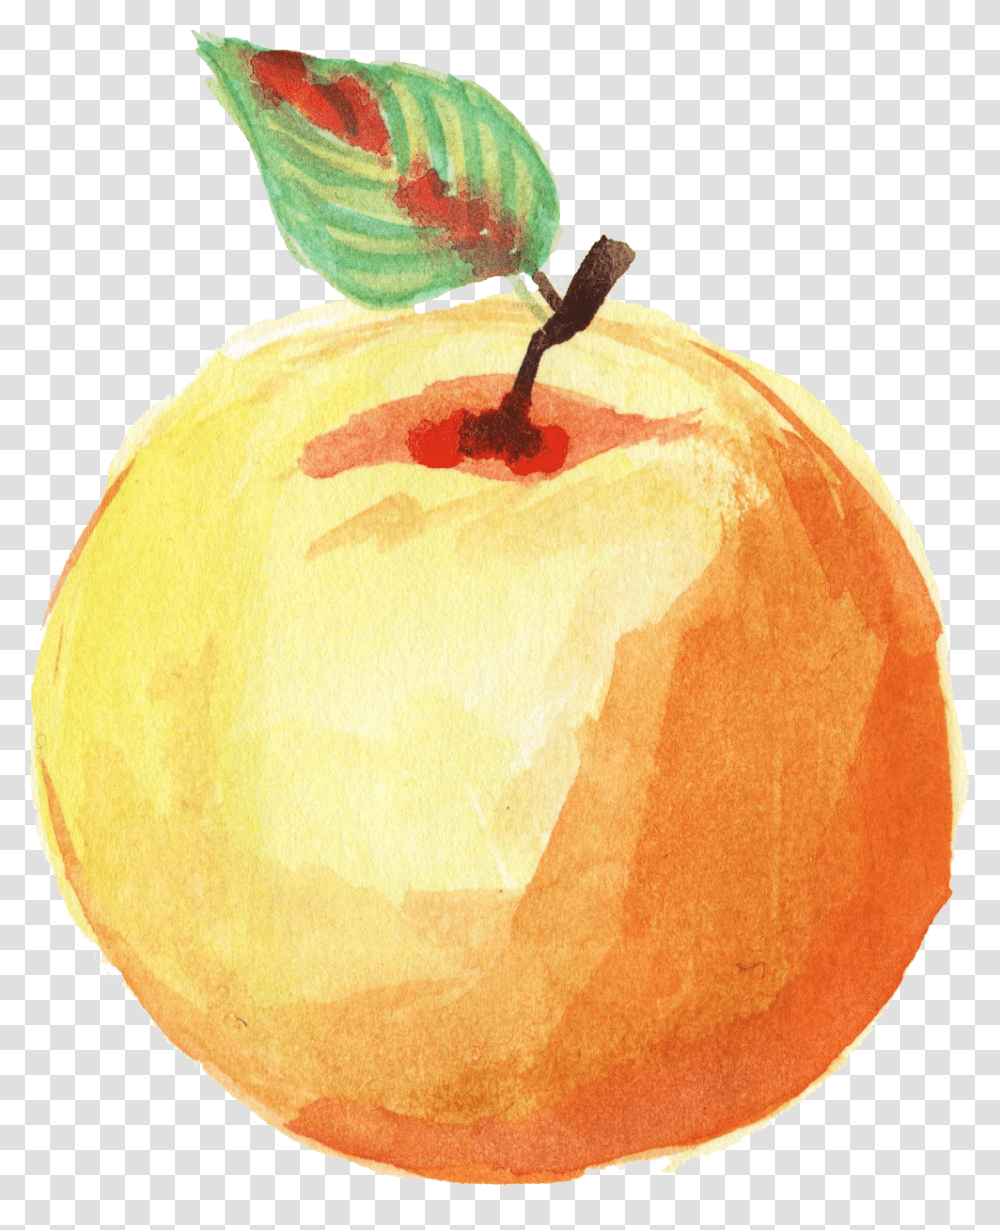 Watercolor Fruit Background, Plant, Food, Produce, Grapefruit Transparent Png